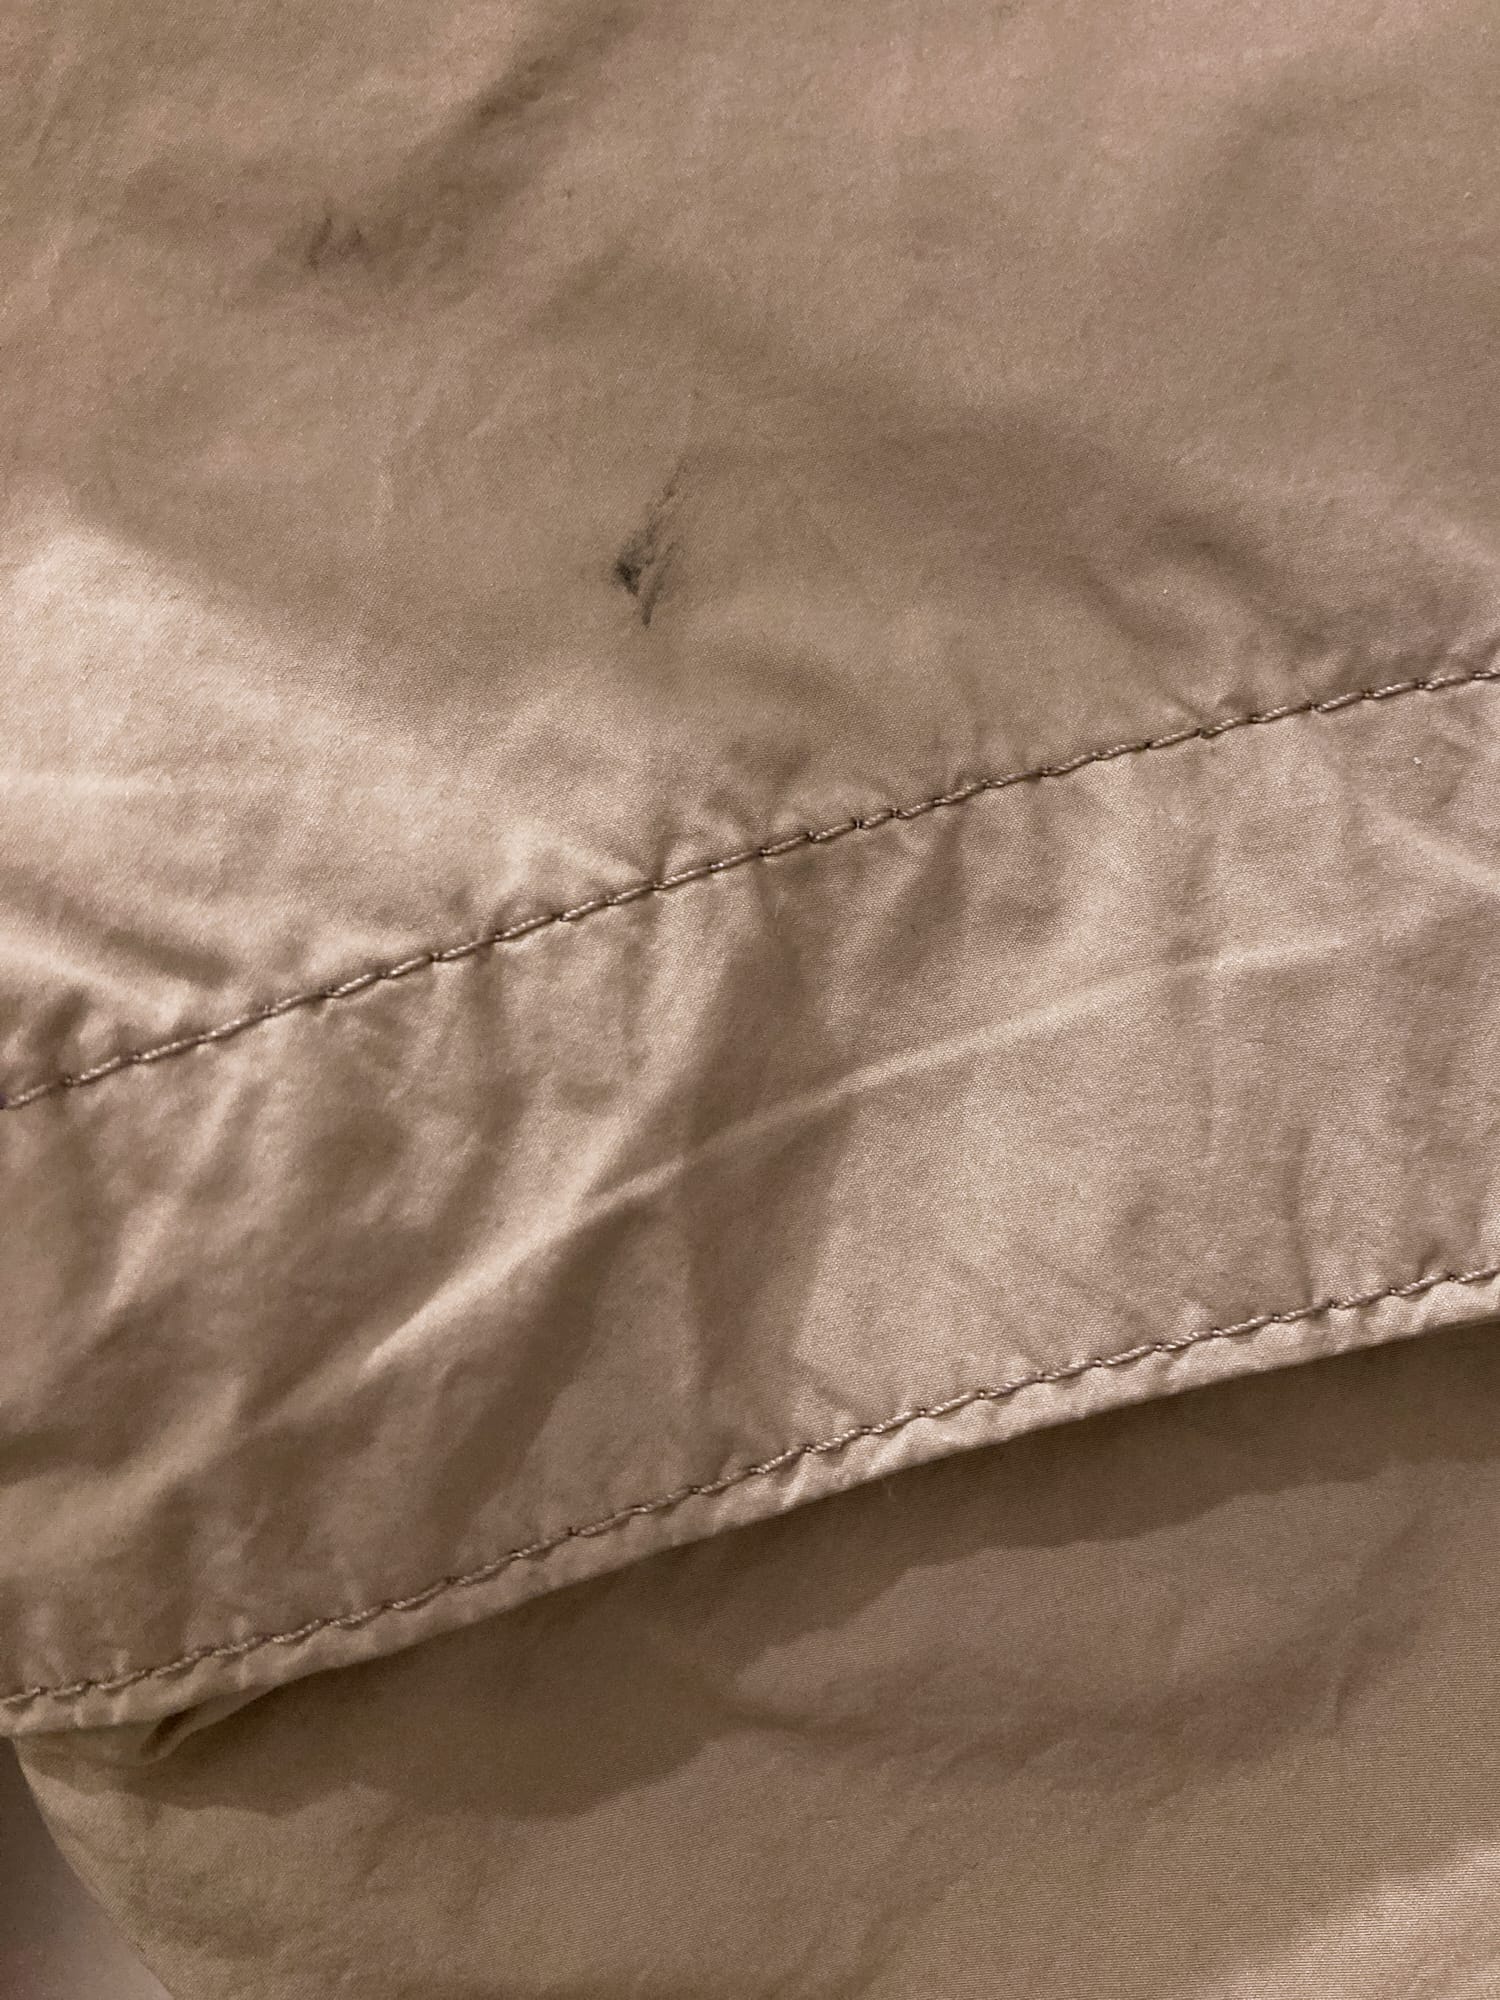 Issey Miyake Men spring 2012 beige polyester nylon slim cargo pants - size 2 S M